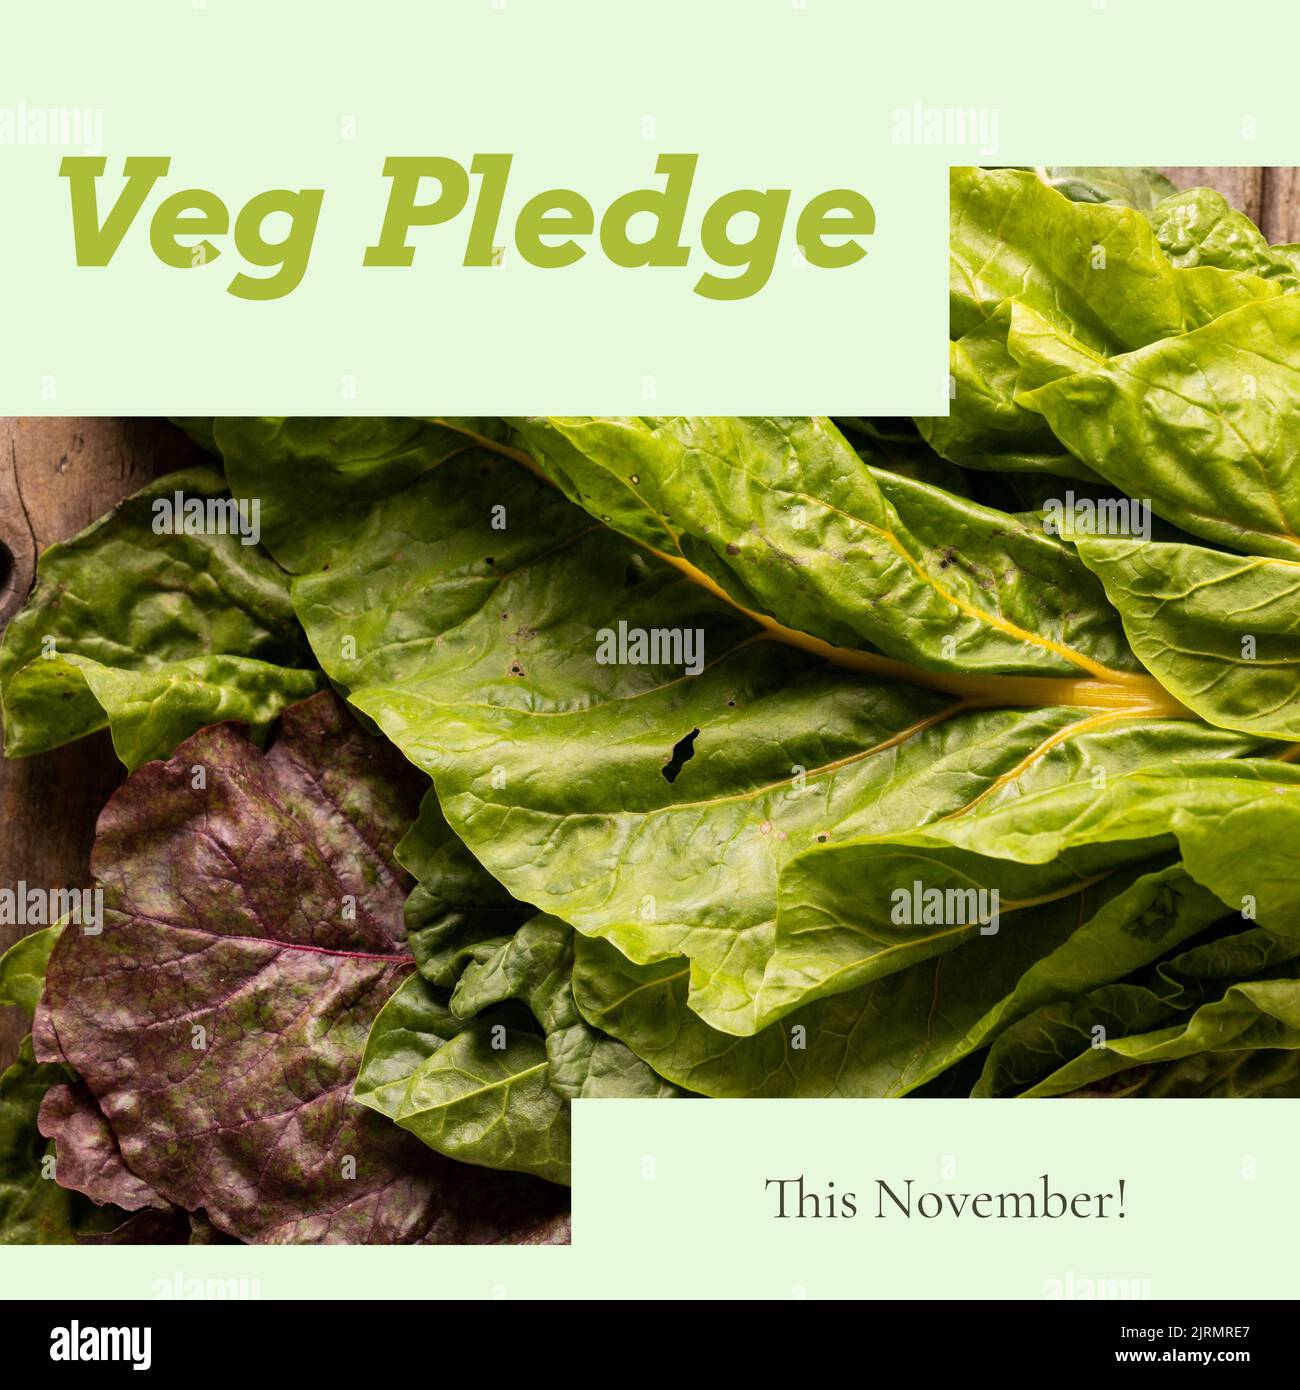 Imagen digital compuesta de verduras de hoja verde frescas con texto de promesa de verduras Foto de stock